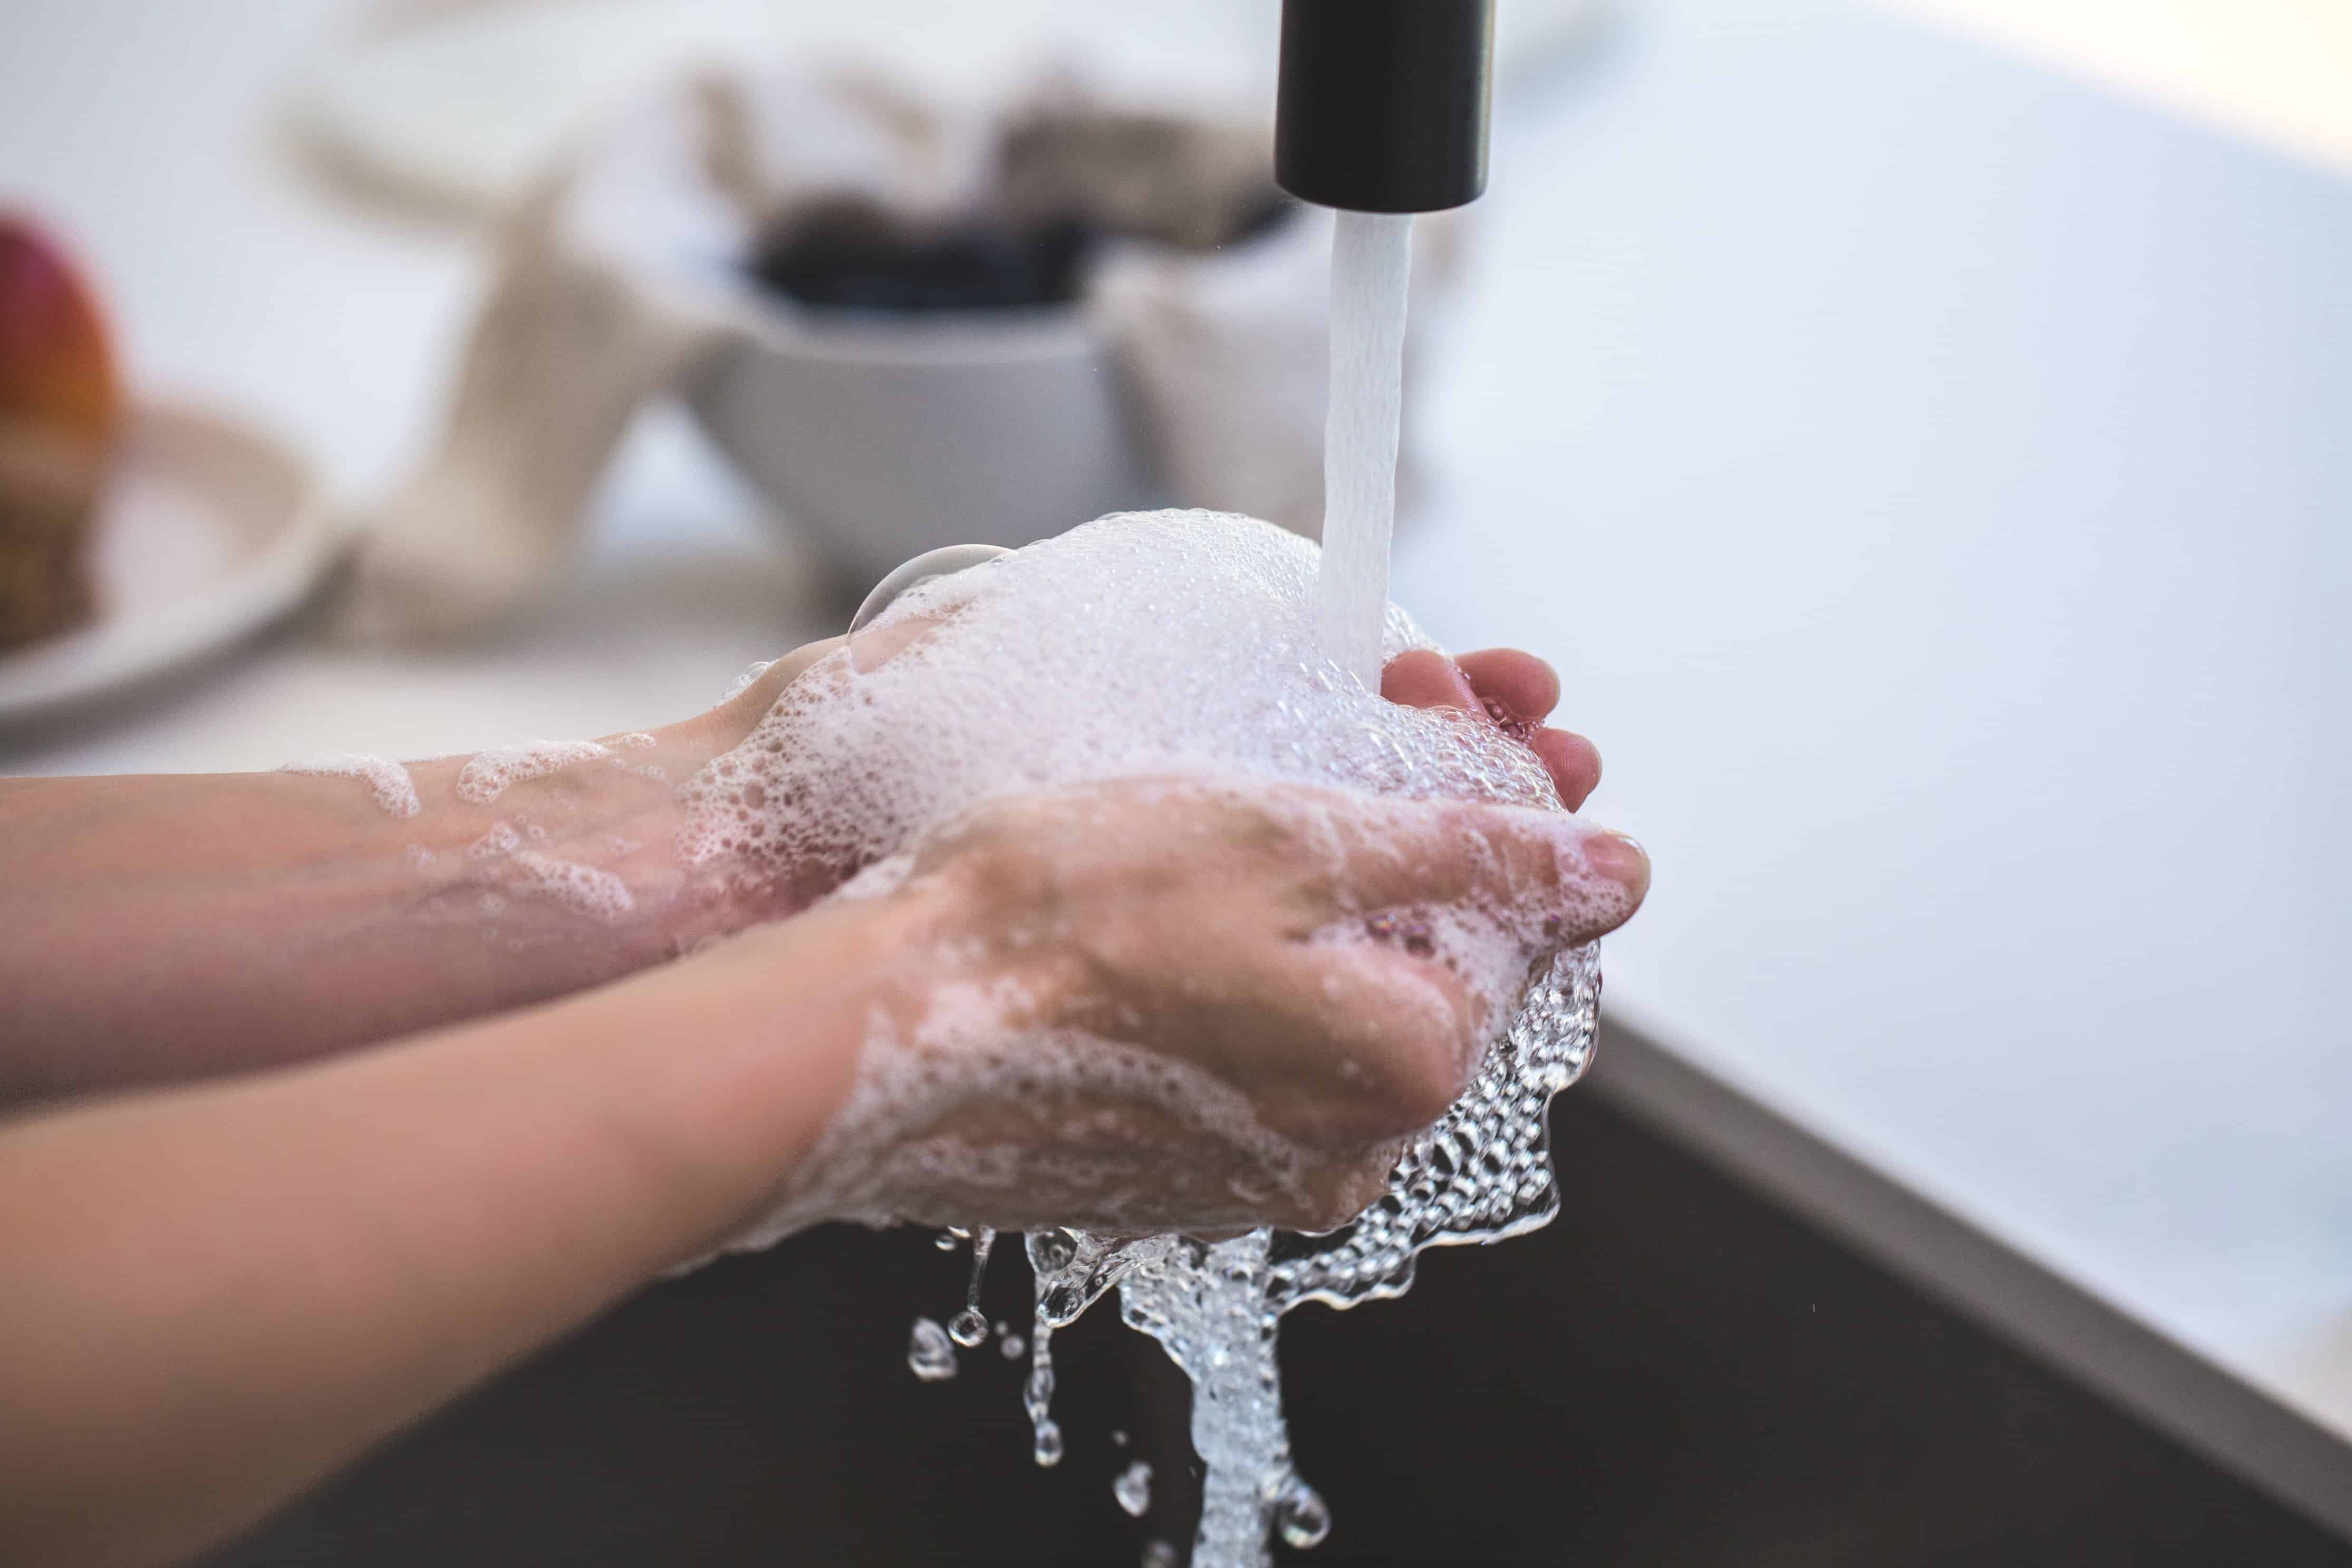 Washroom Hygiene 101: Key Benefits of Keeping it Clean & Germ-Free